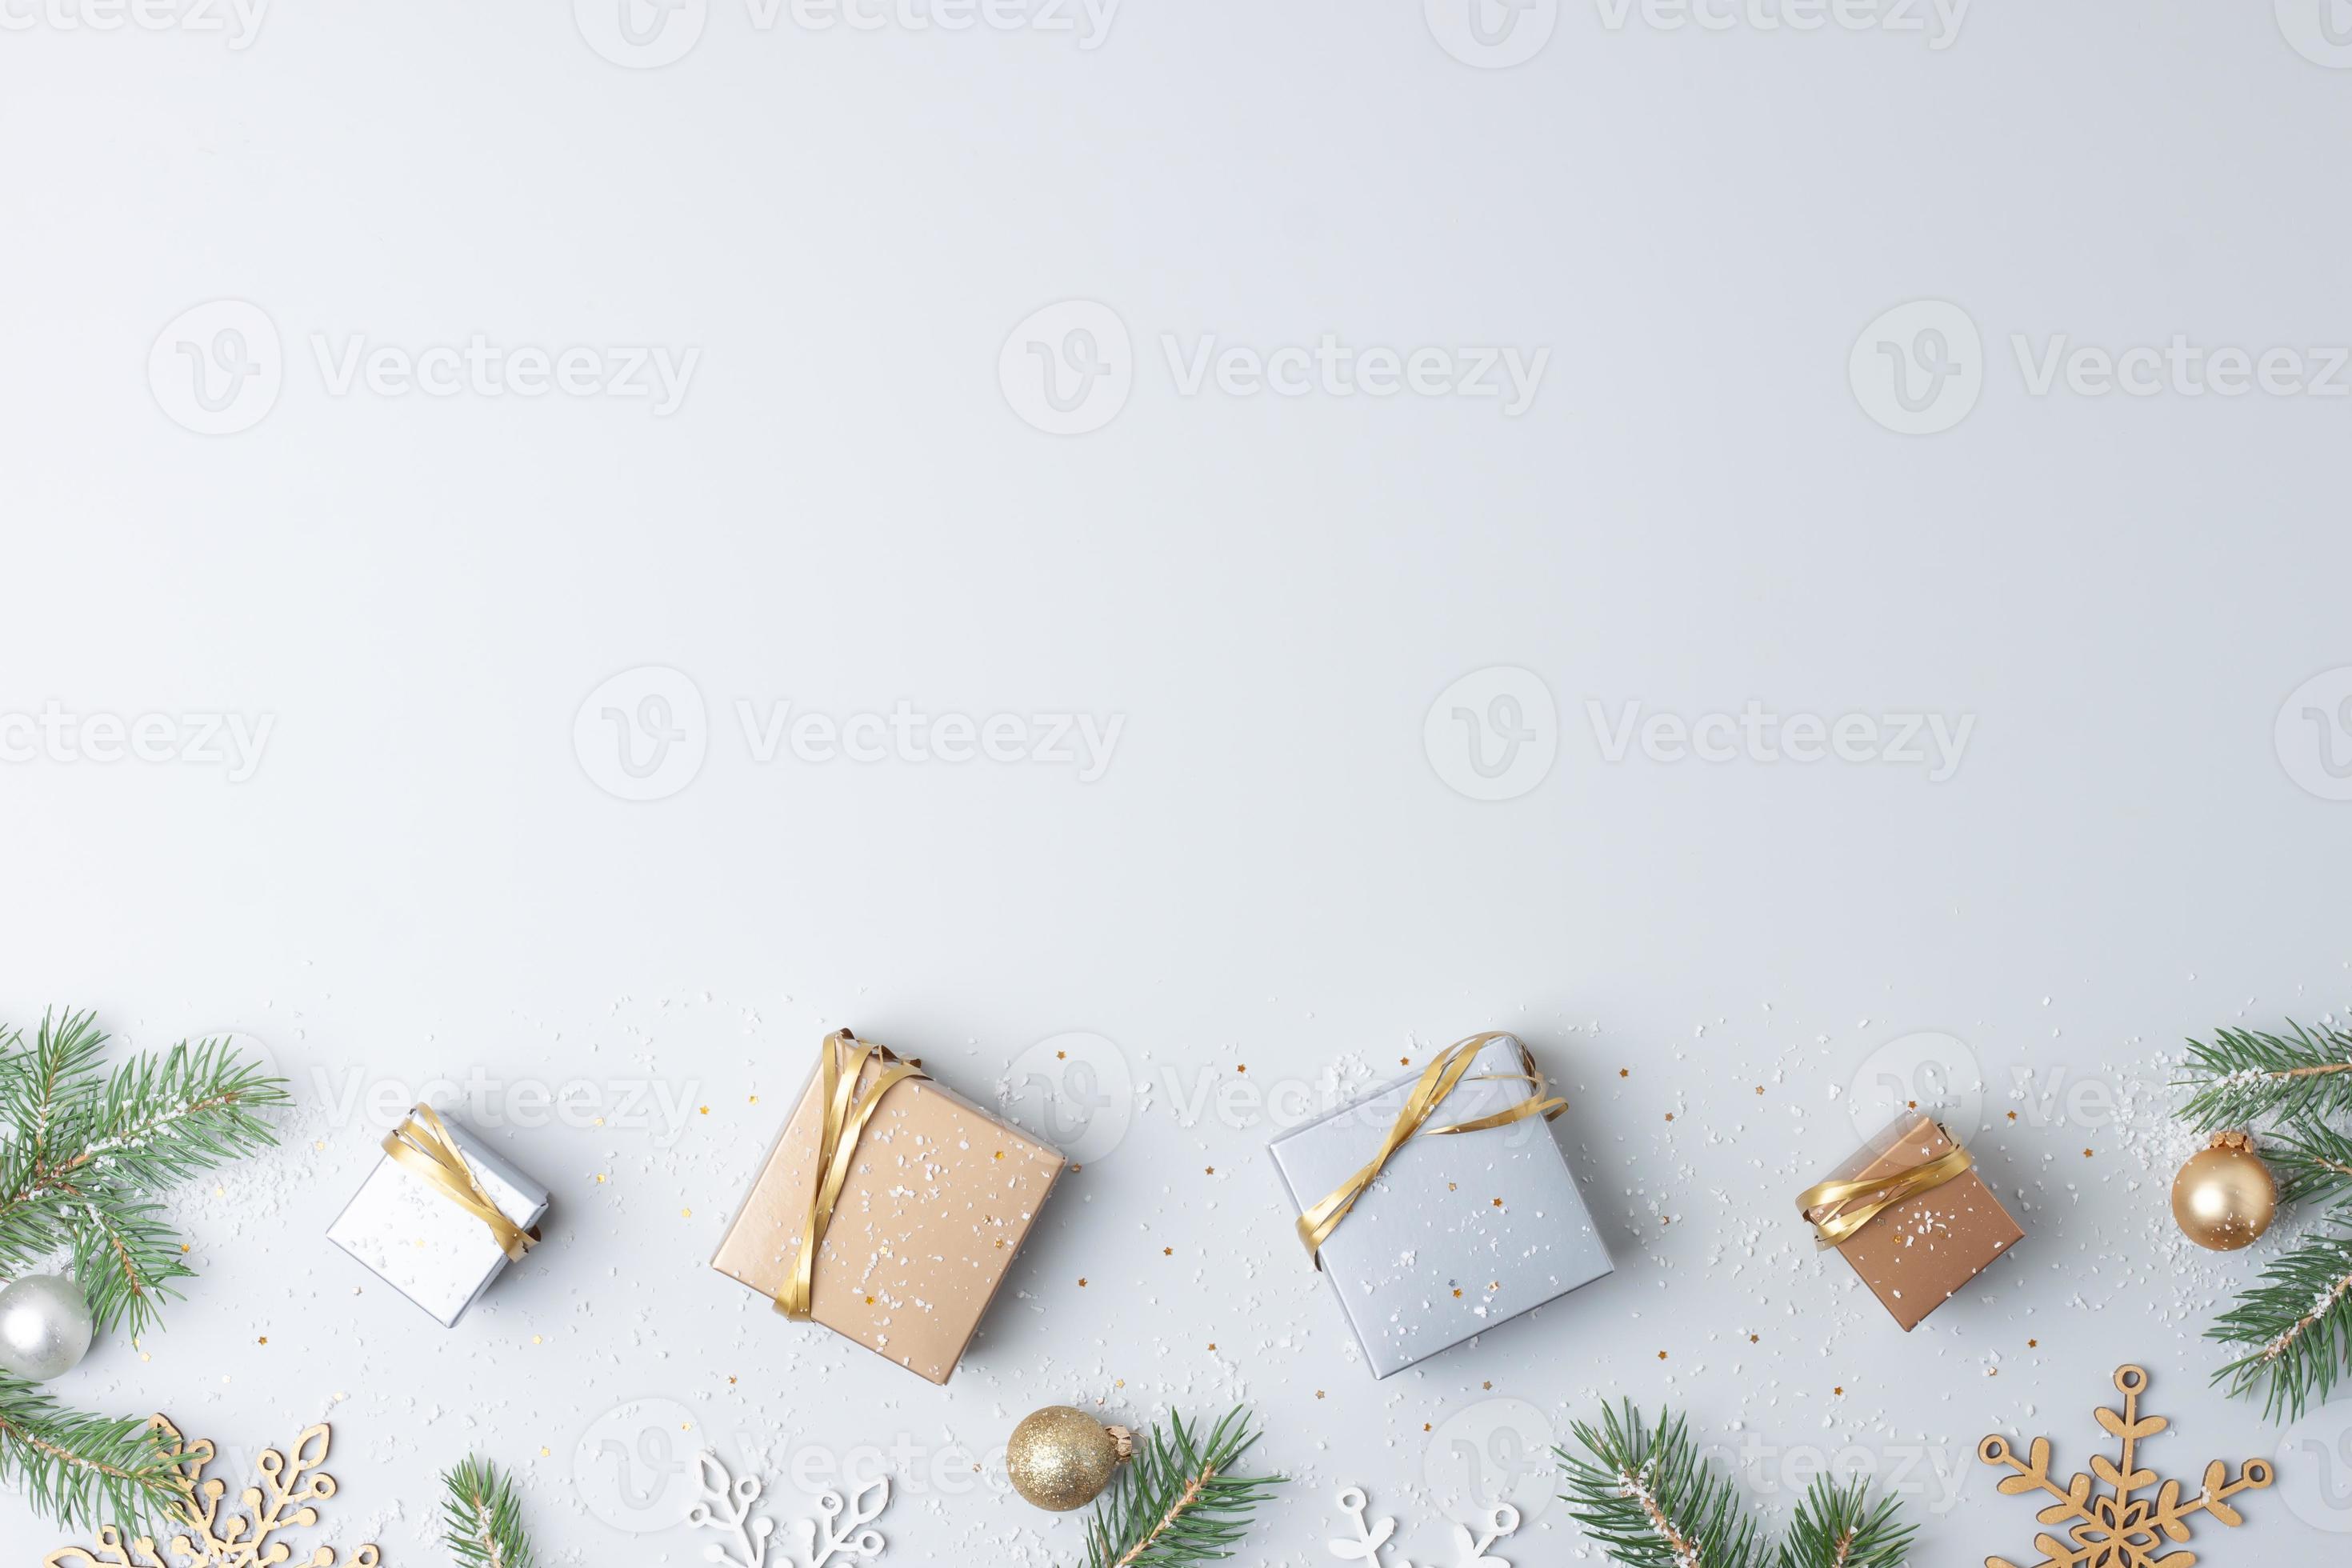 Trang trí Giáng sinh xám sẽ làm cho ngôi nhà của bạn thêm sinh động và ấm áp. Chúng tôi mong muốn mang đến cho bạn nhiều ý tưởng trang trí Giáng sinh với màu xám tuyệt đẹp. Hãy xem những hình ảnh trang trí Giáng sinh xám của chúng tôi để thực sự khơi gợi sự sáng tạo của bạn!